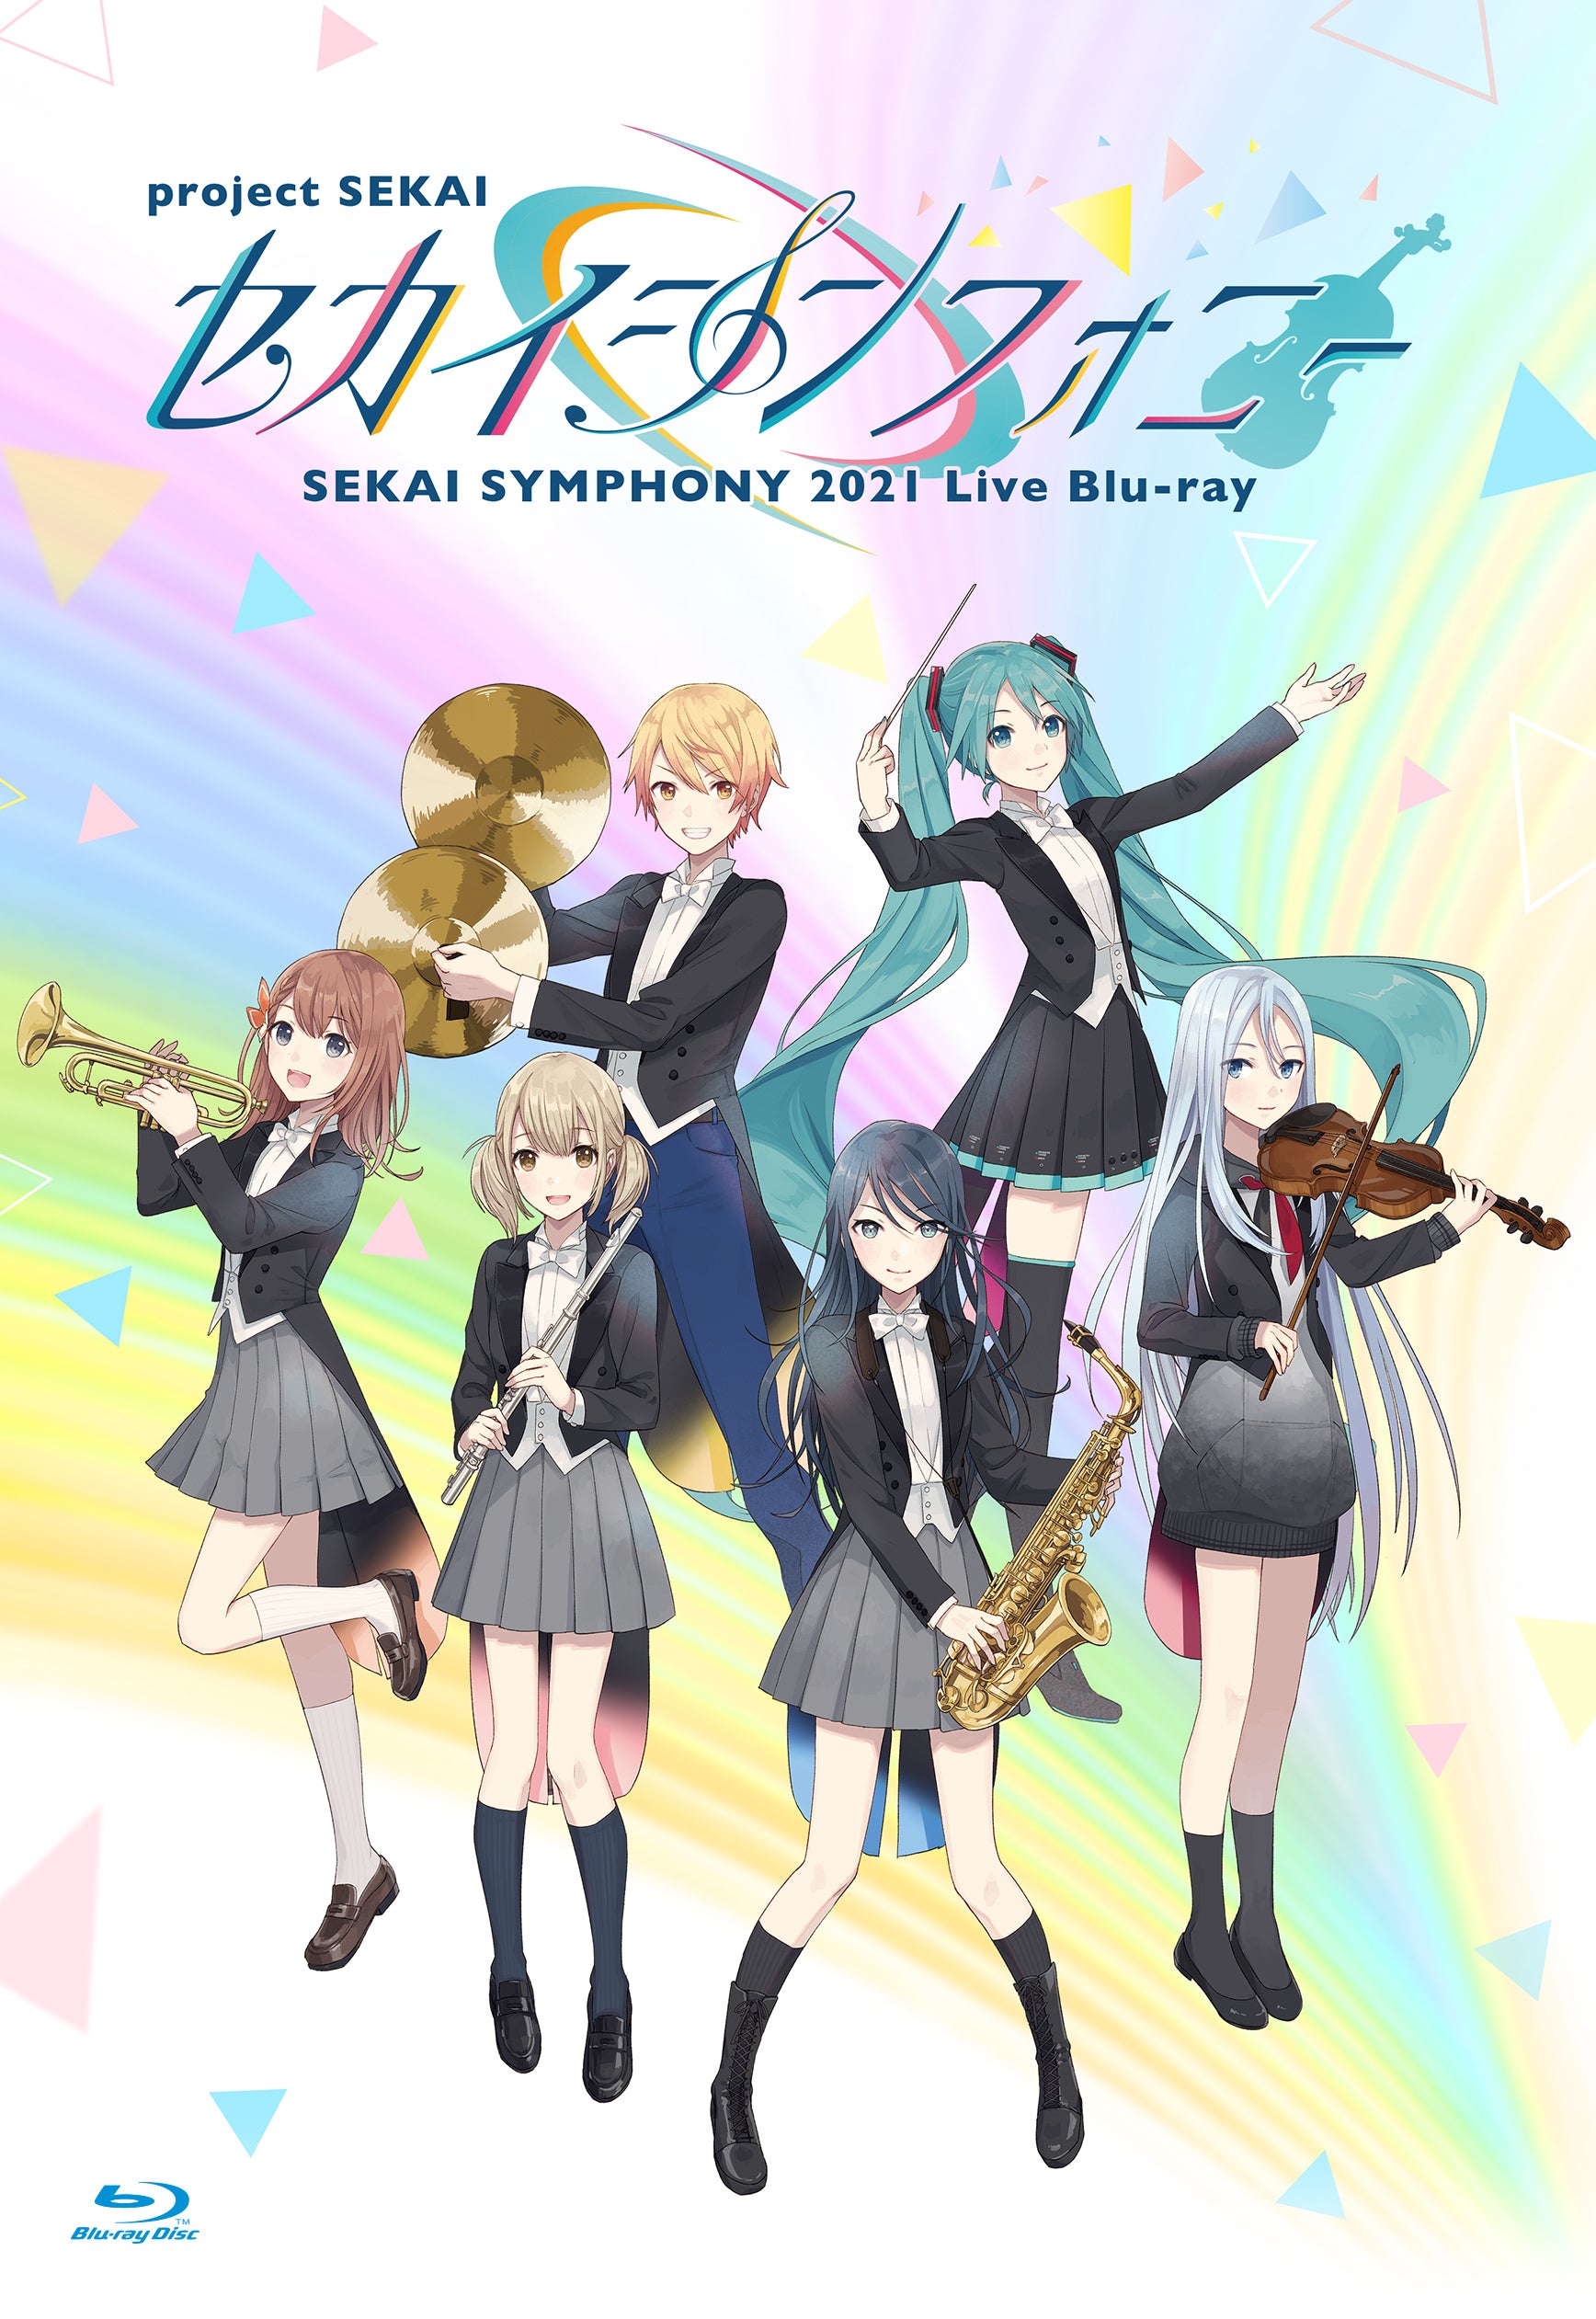 セカイシンフォニー Sekai Symphony 2021 Live Blu-ray